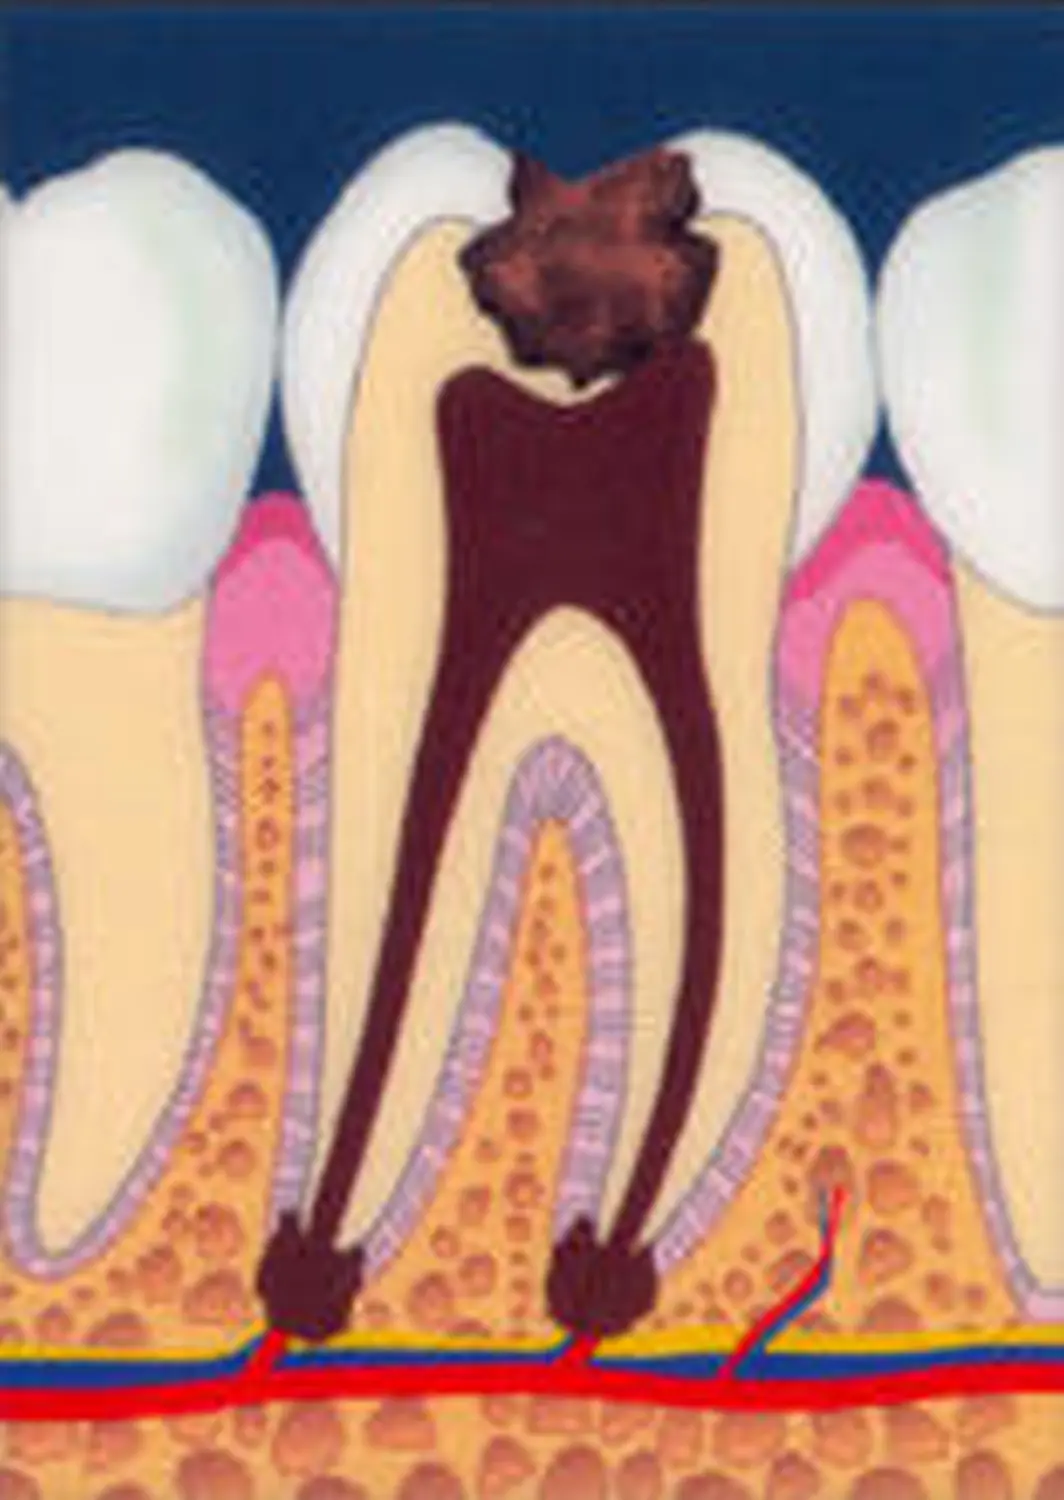 Oralchirurgie Zahnarztpraxis